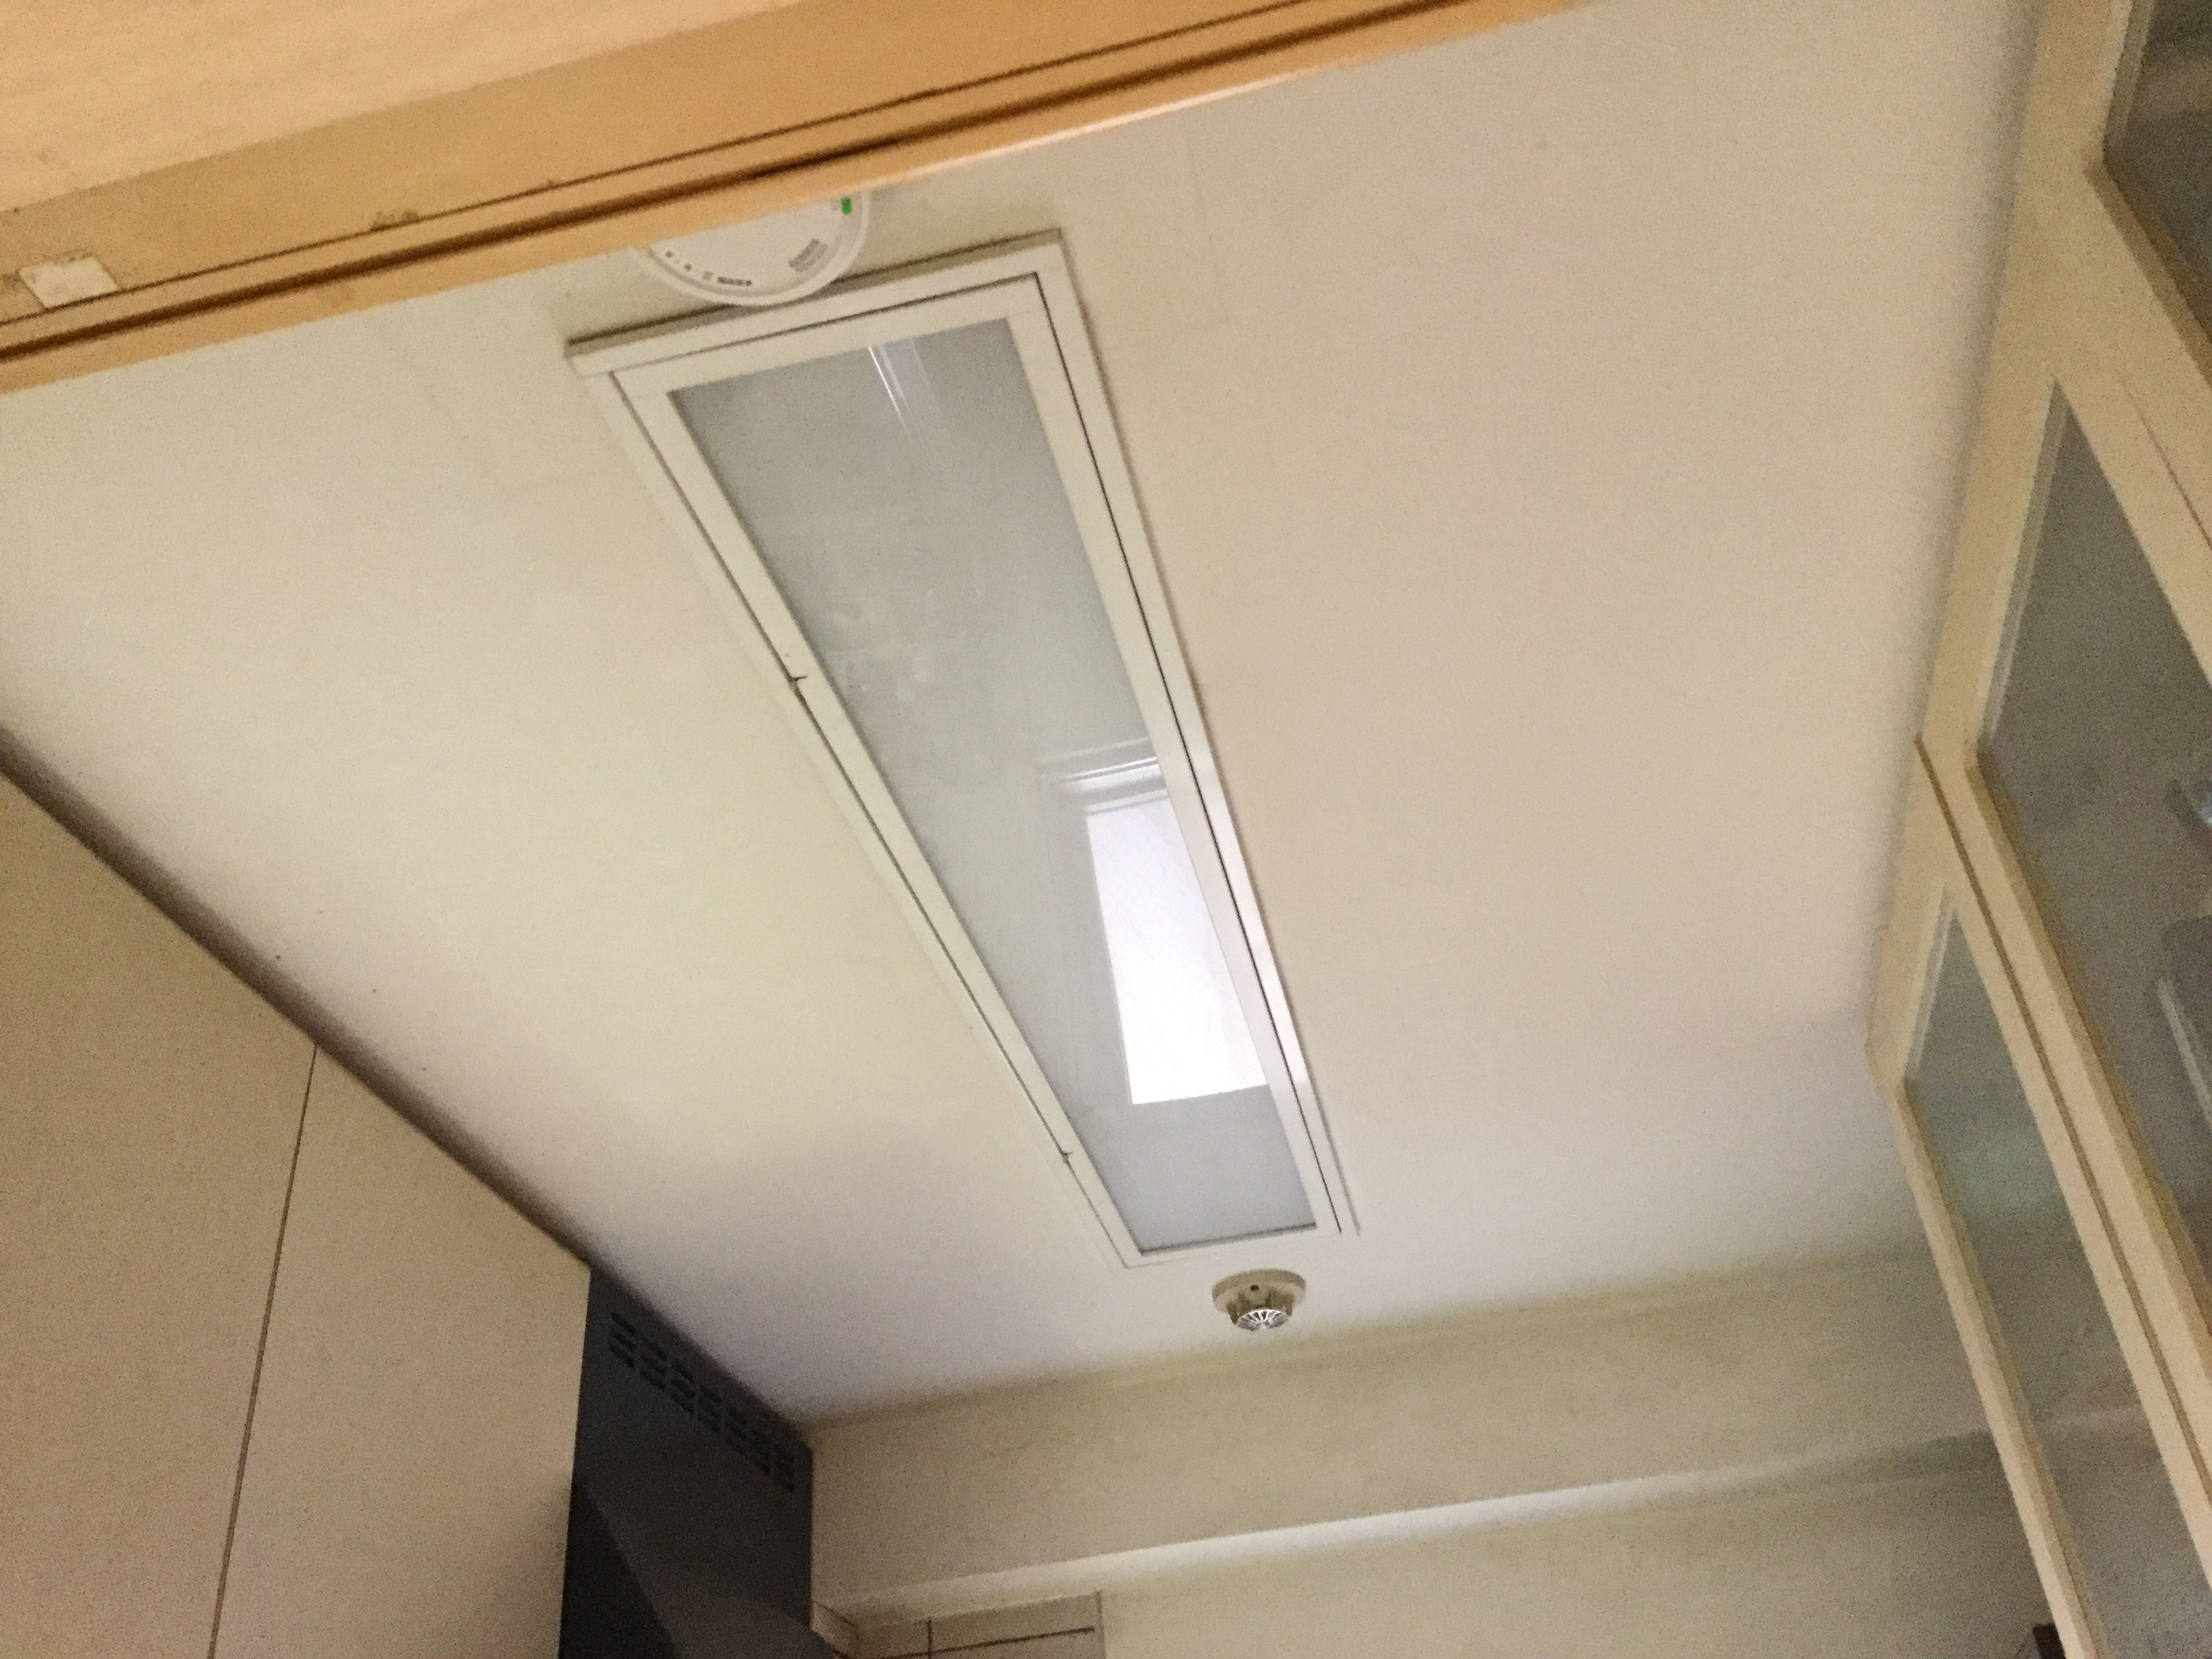 キッチンの埋込型照明器具を交換したい（東京都新宿区のお客様より